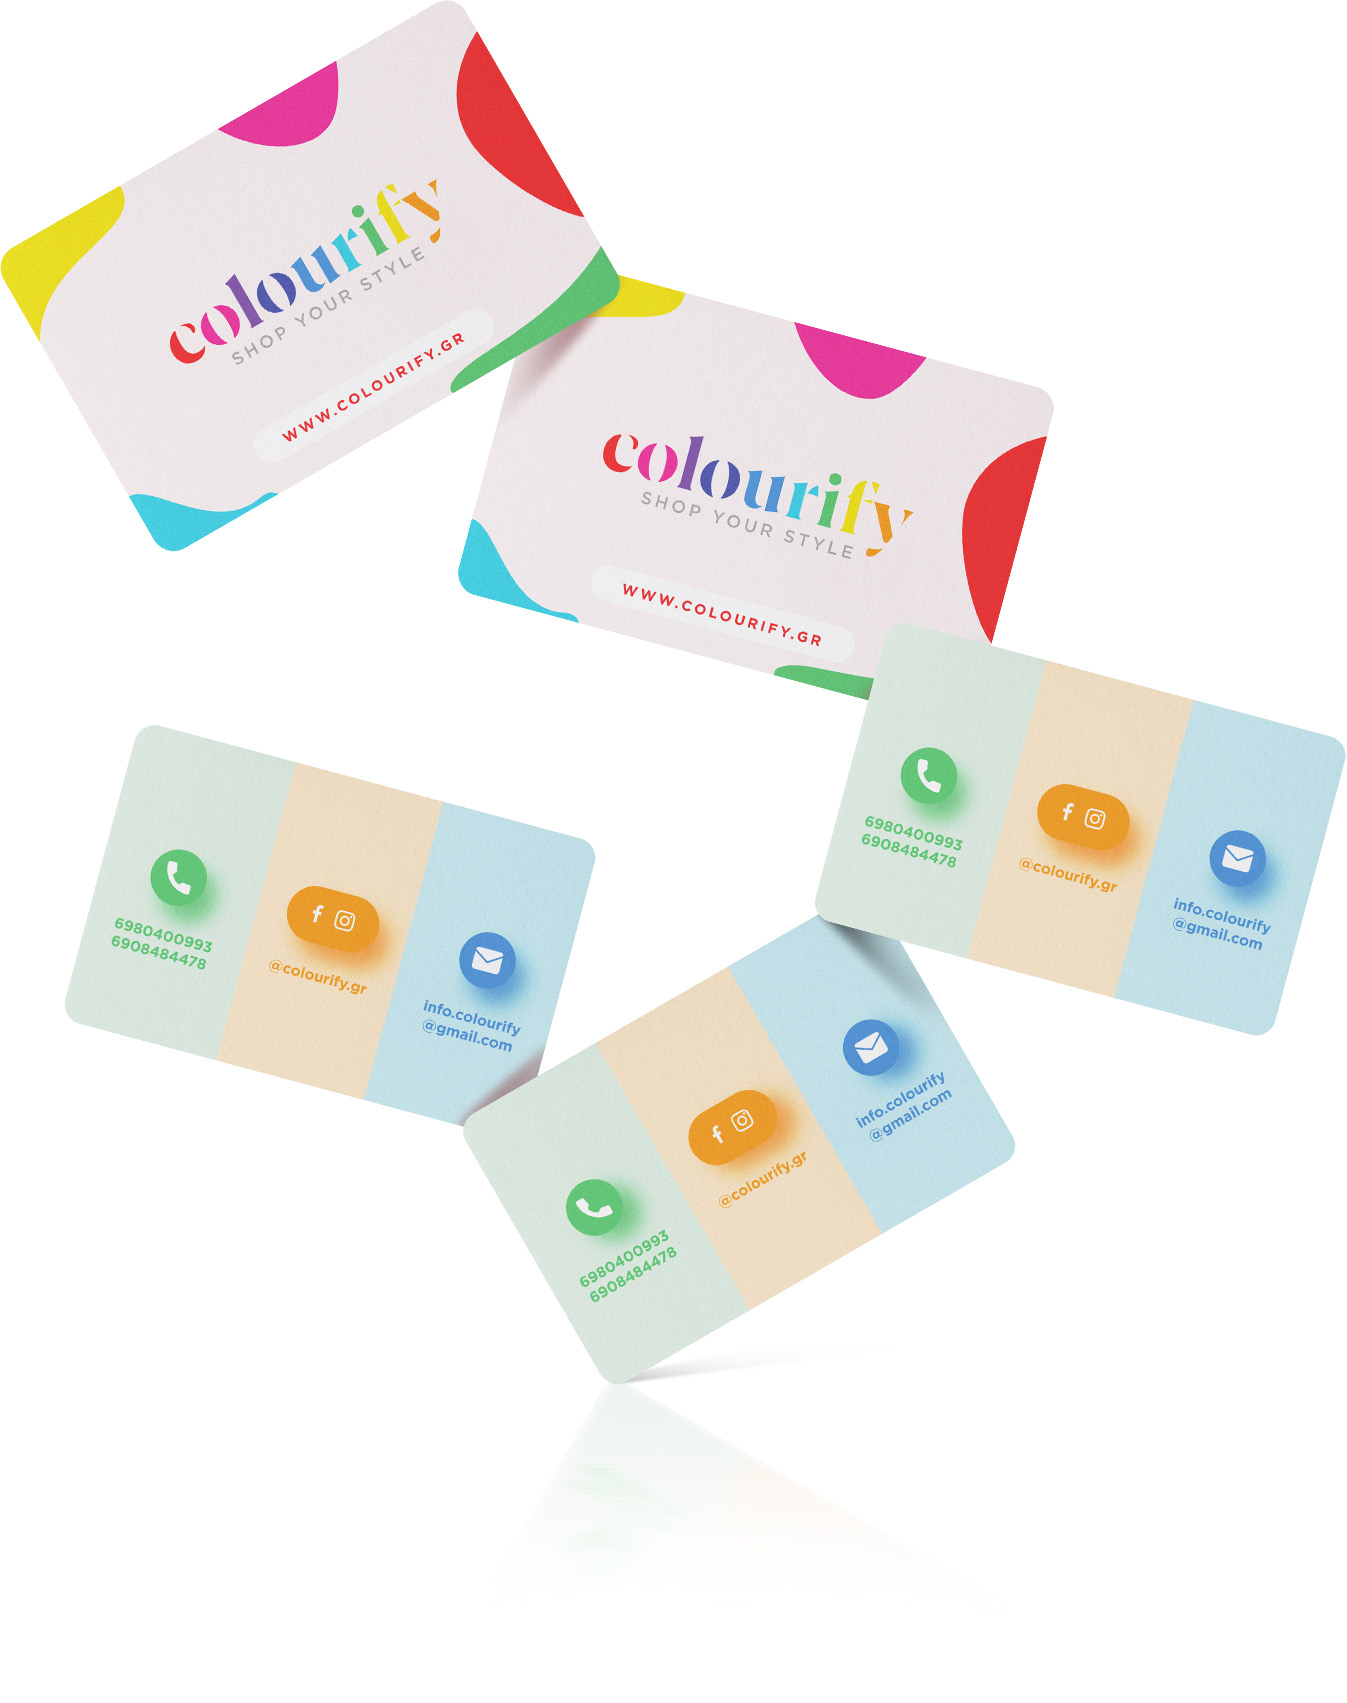 Colourify Business Cards